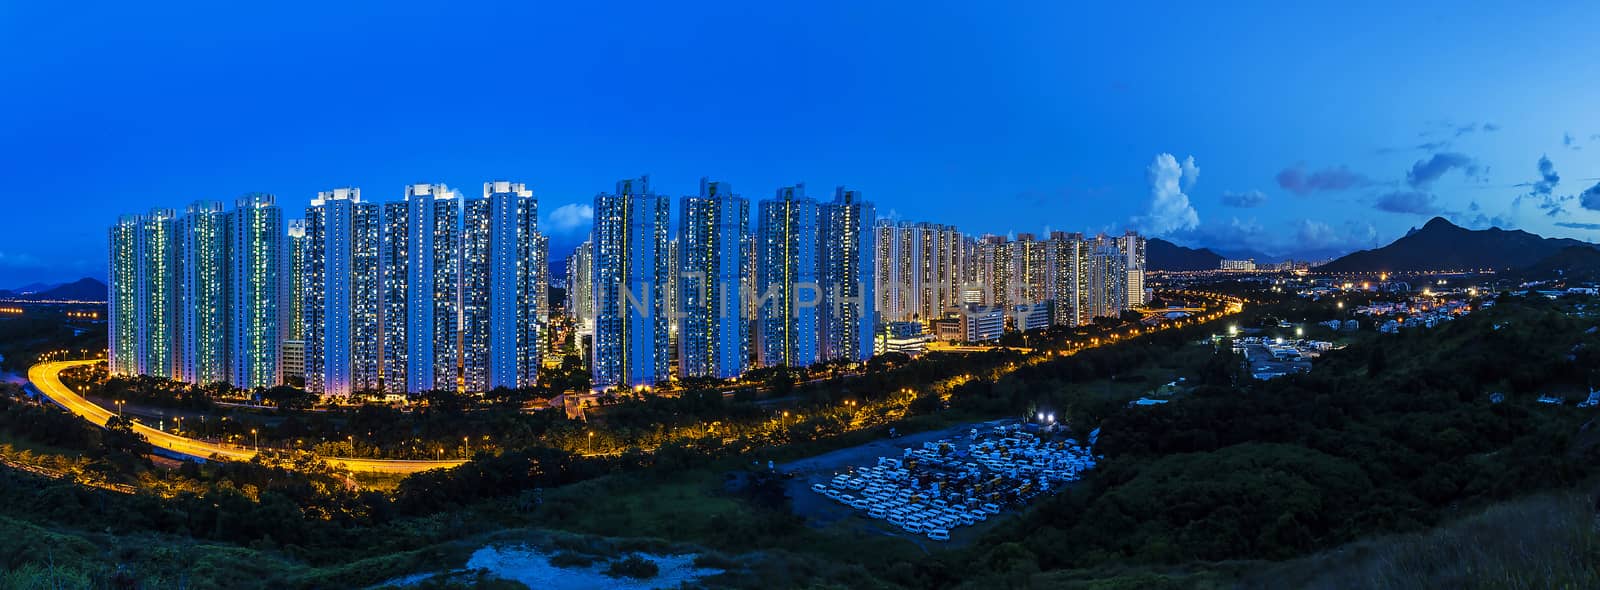 Tin Shui Wai district in Hong Kong at night by kawing921